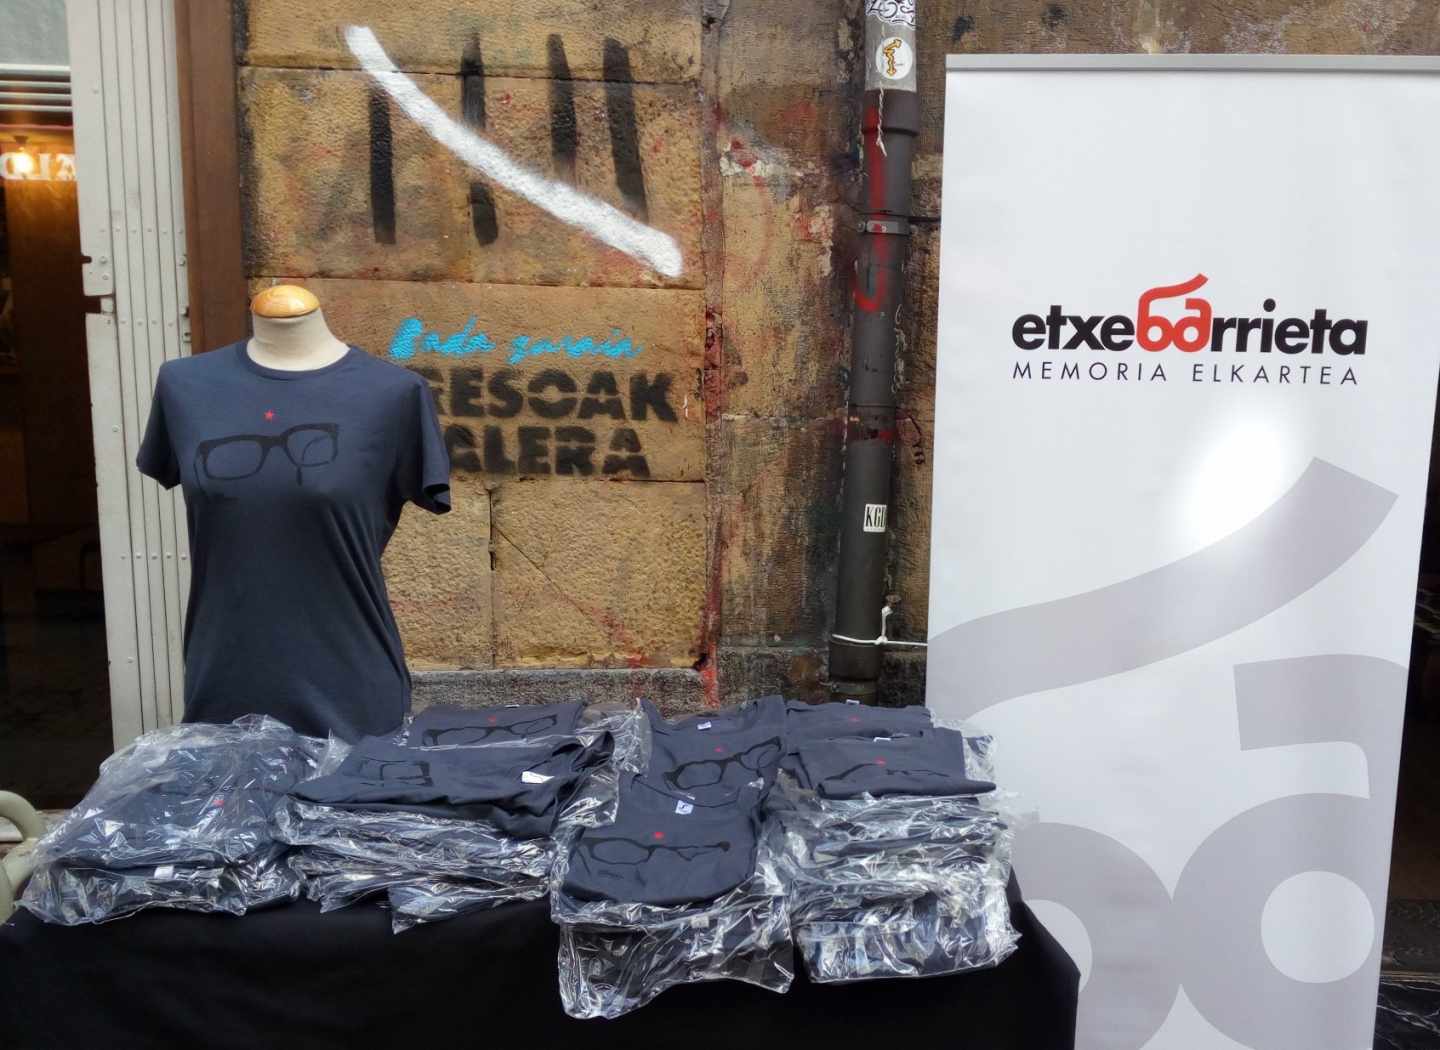 Venta de camisetas en recuerdo de Txabi Etxebarrieta, primer asesino de ETA.